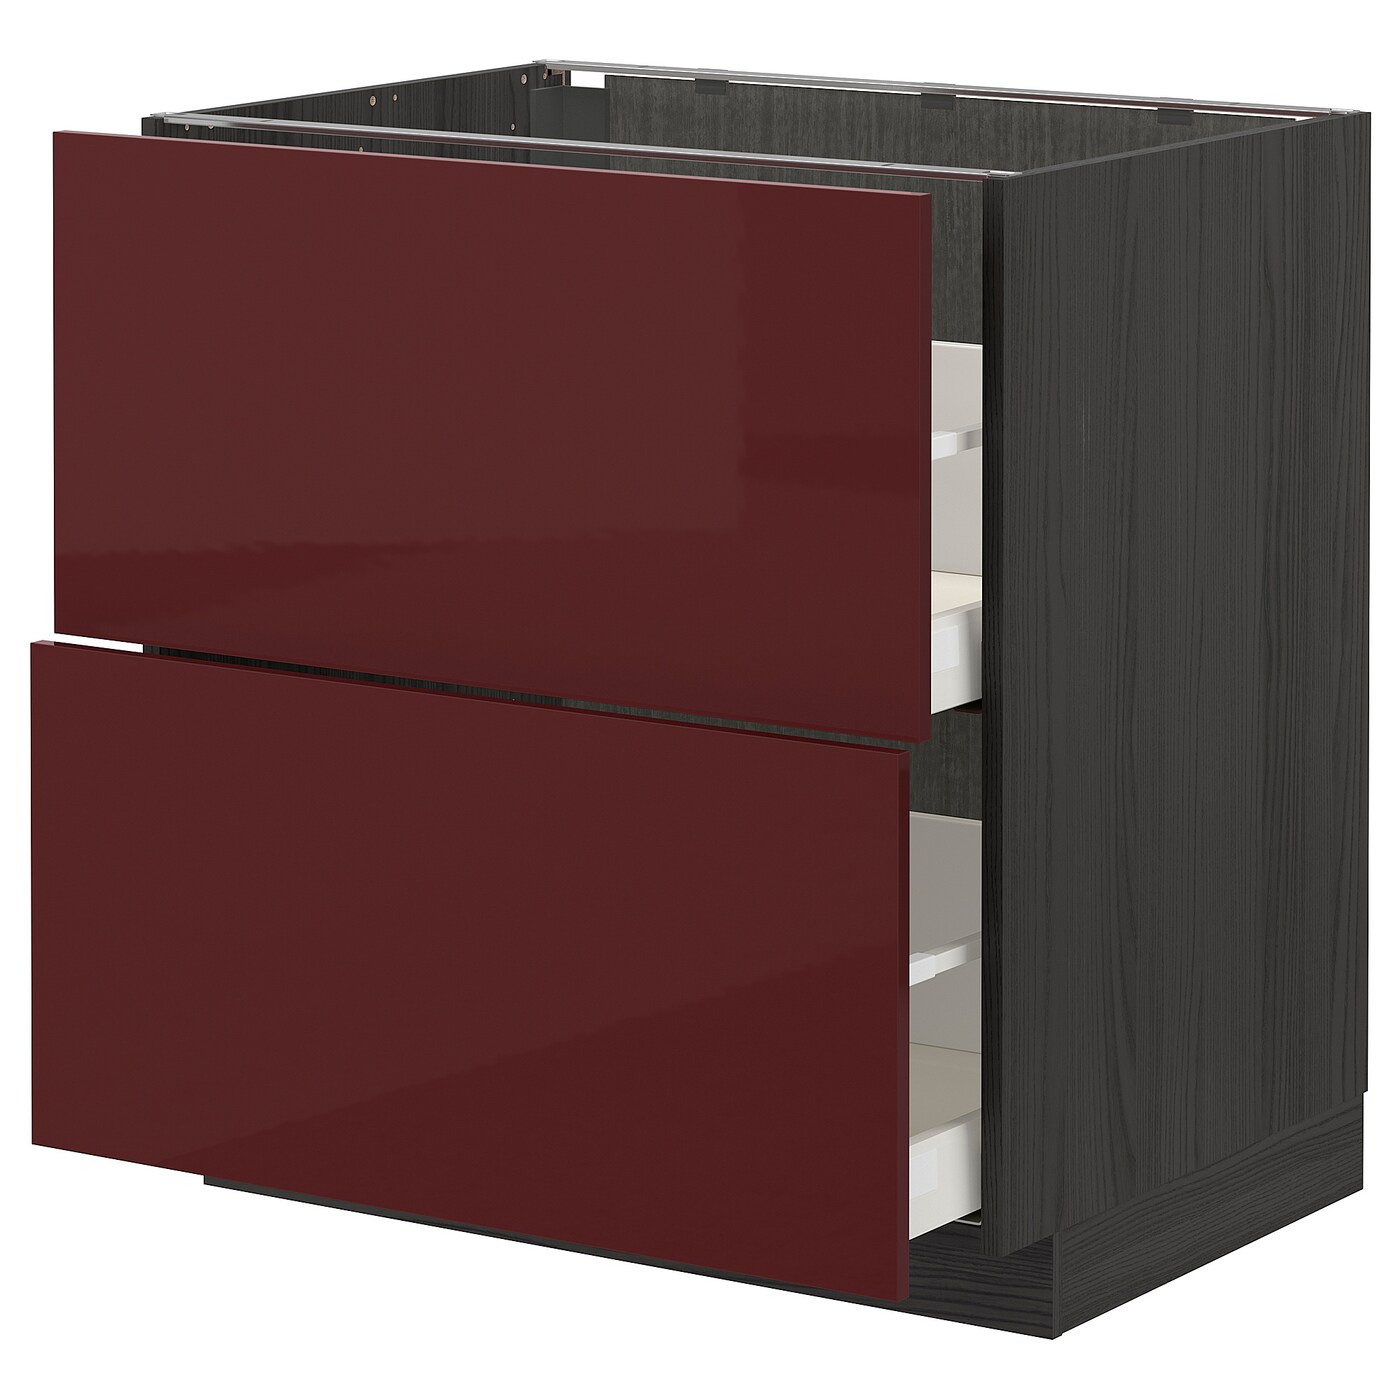 Напольный кухонный шкаф  - IKEA METOD MAXIMERA, 88x62x80см, черный/бордовый, МЕТОД МАКСИМЕРА ИКЕА